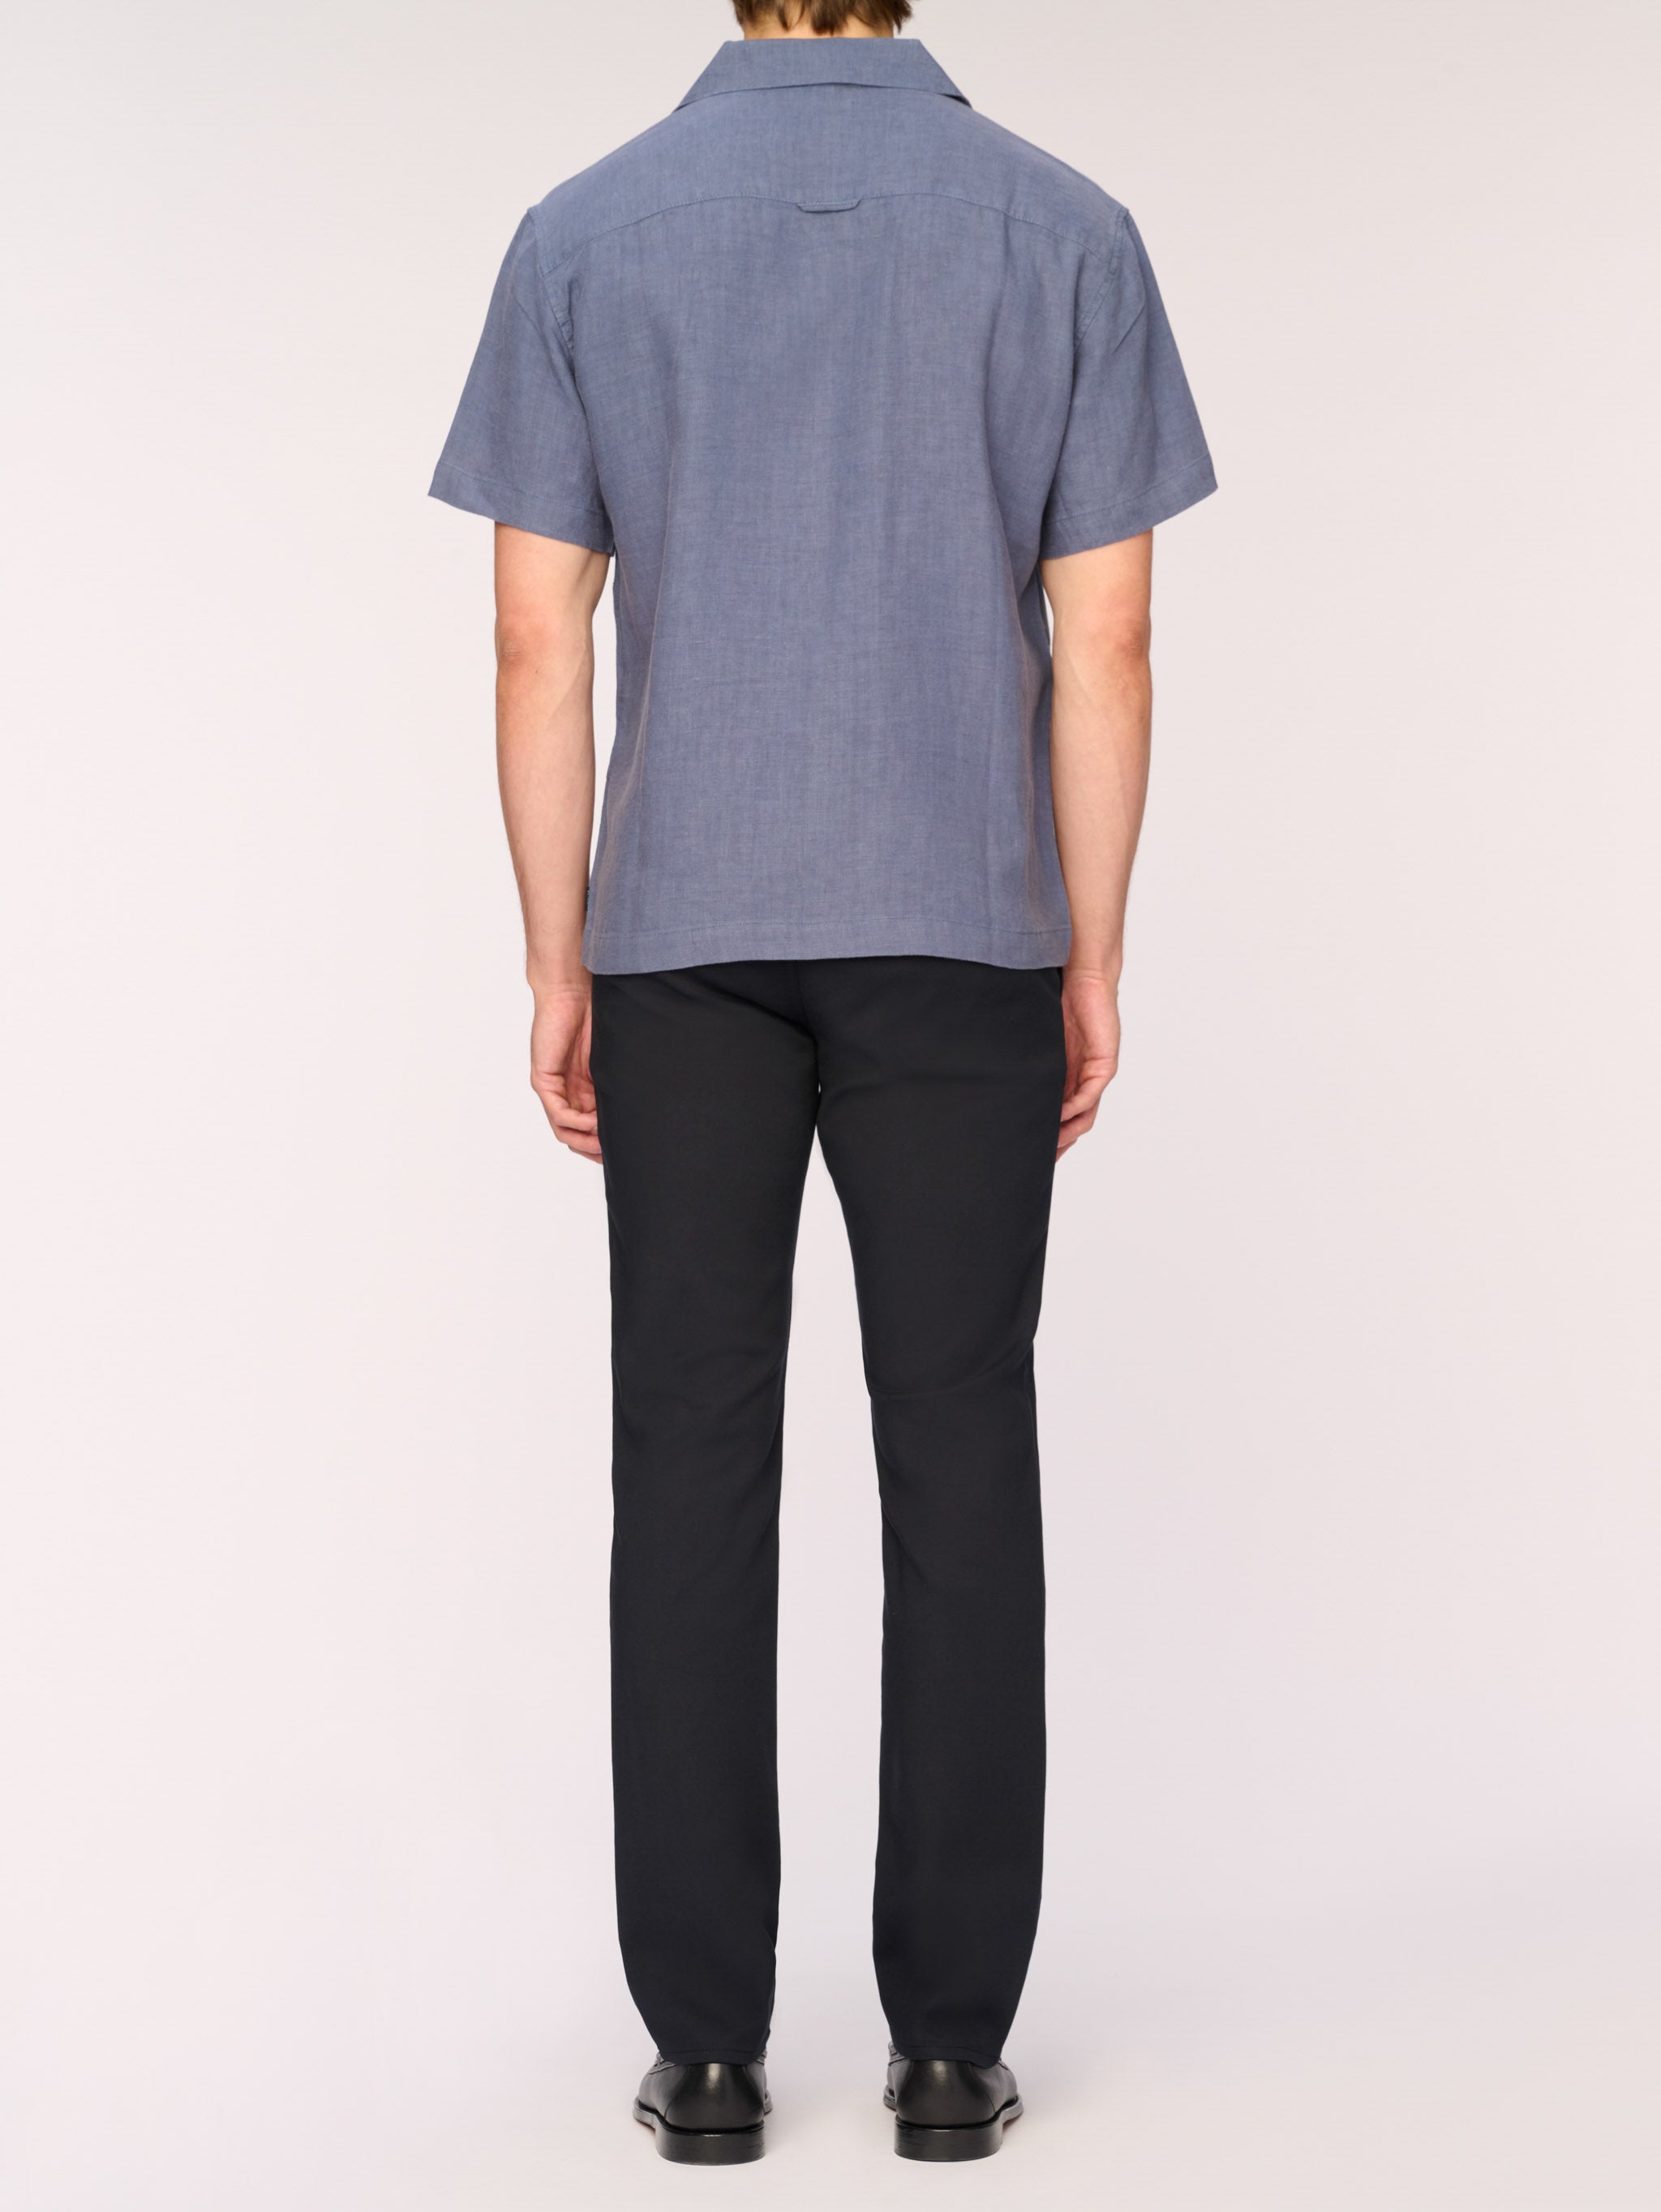 Hugh Shirt | Slate Blue Linen